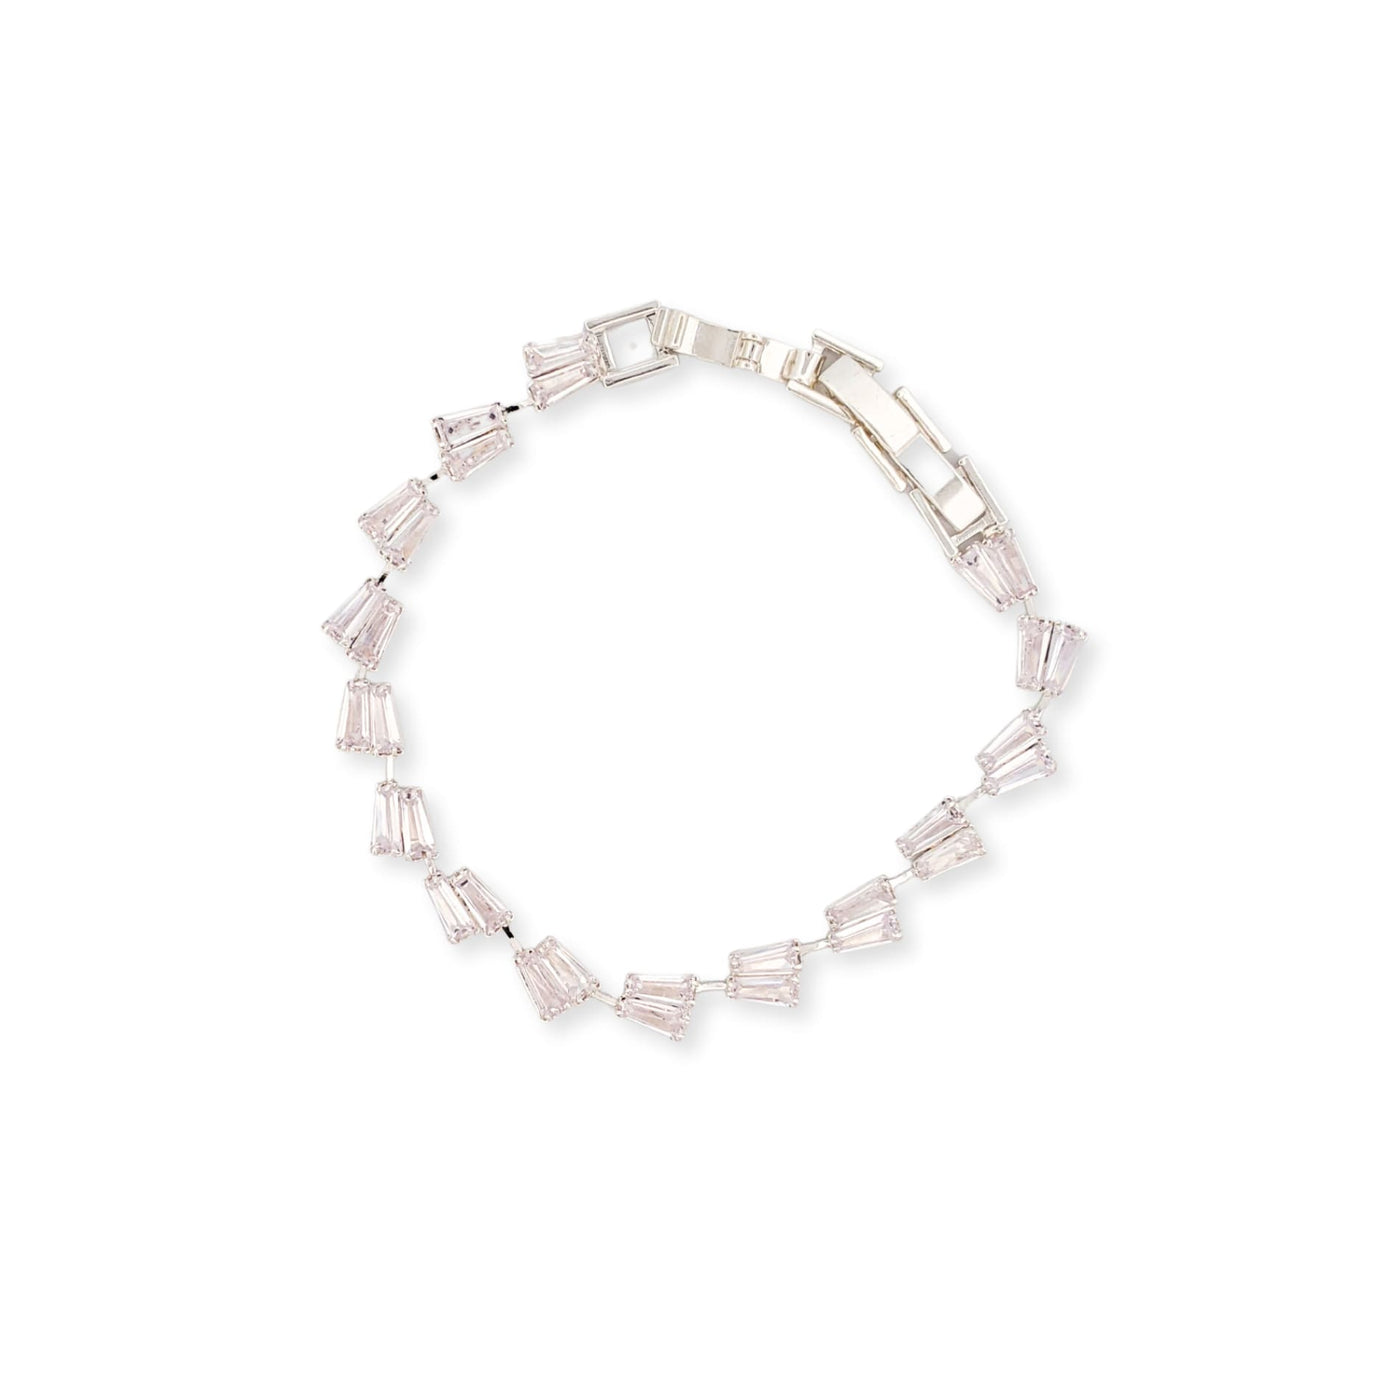 The Harmony Bracelet - 190 Jewelry